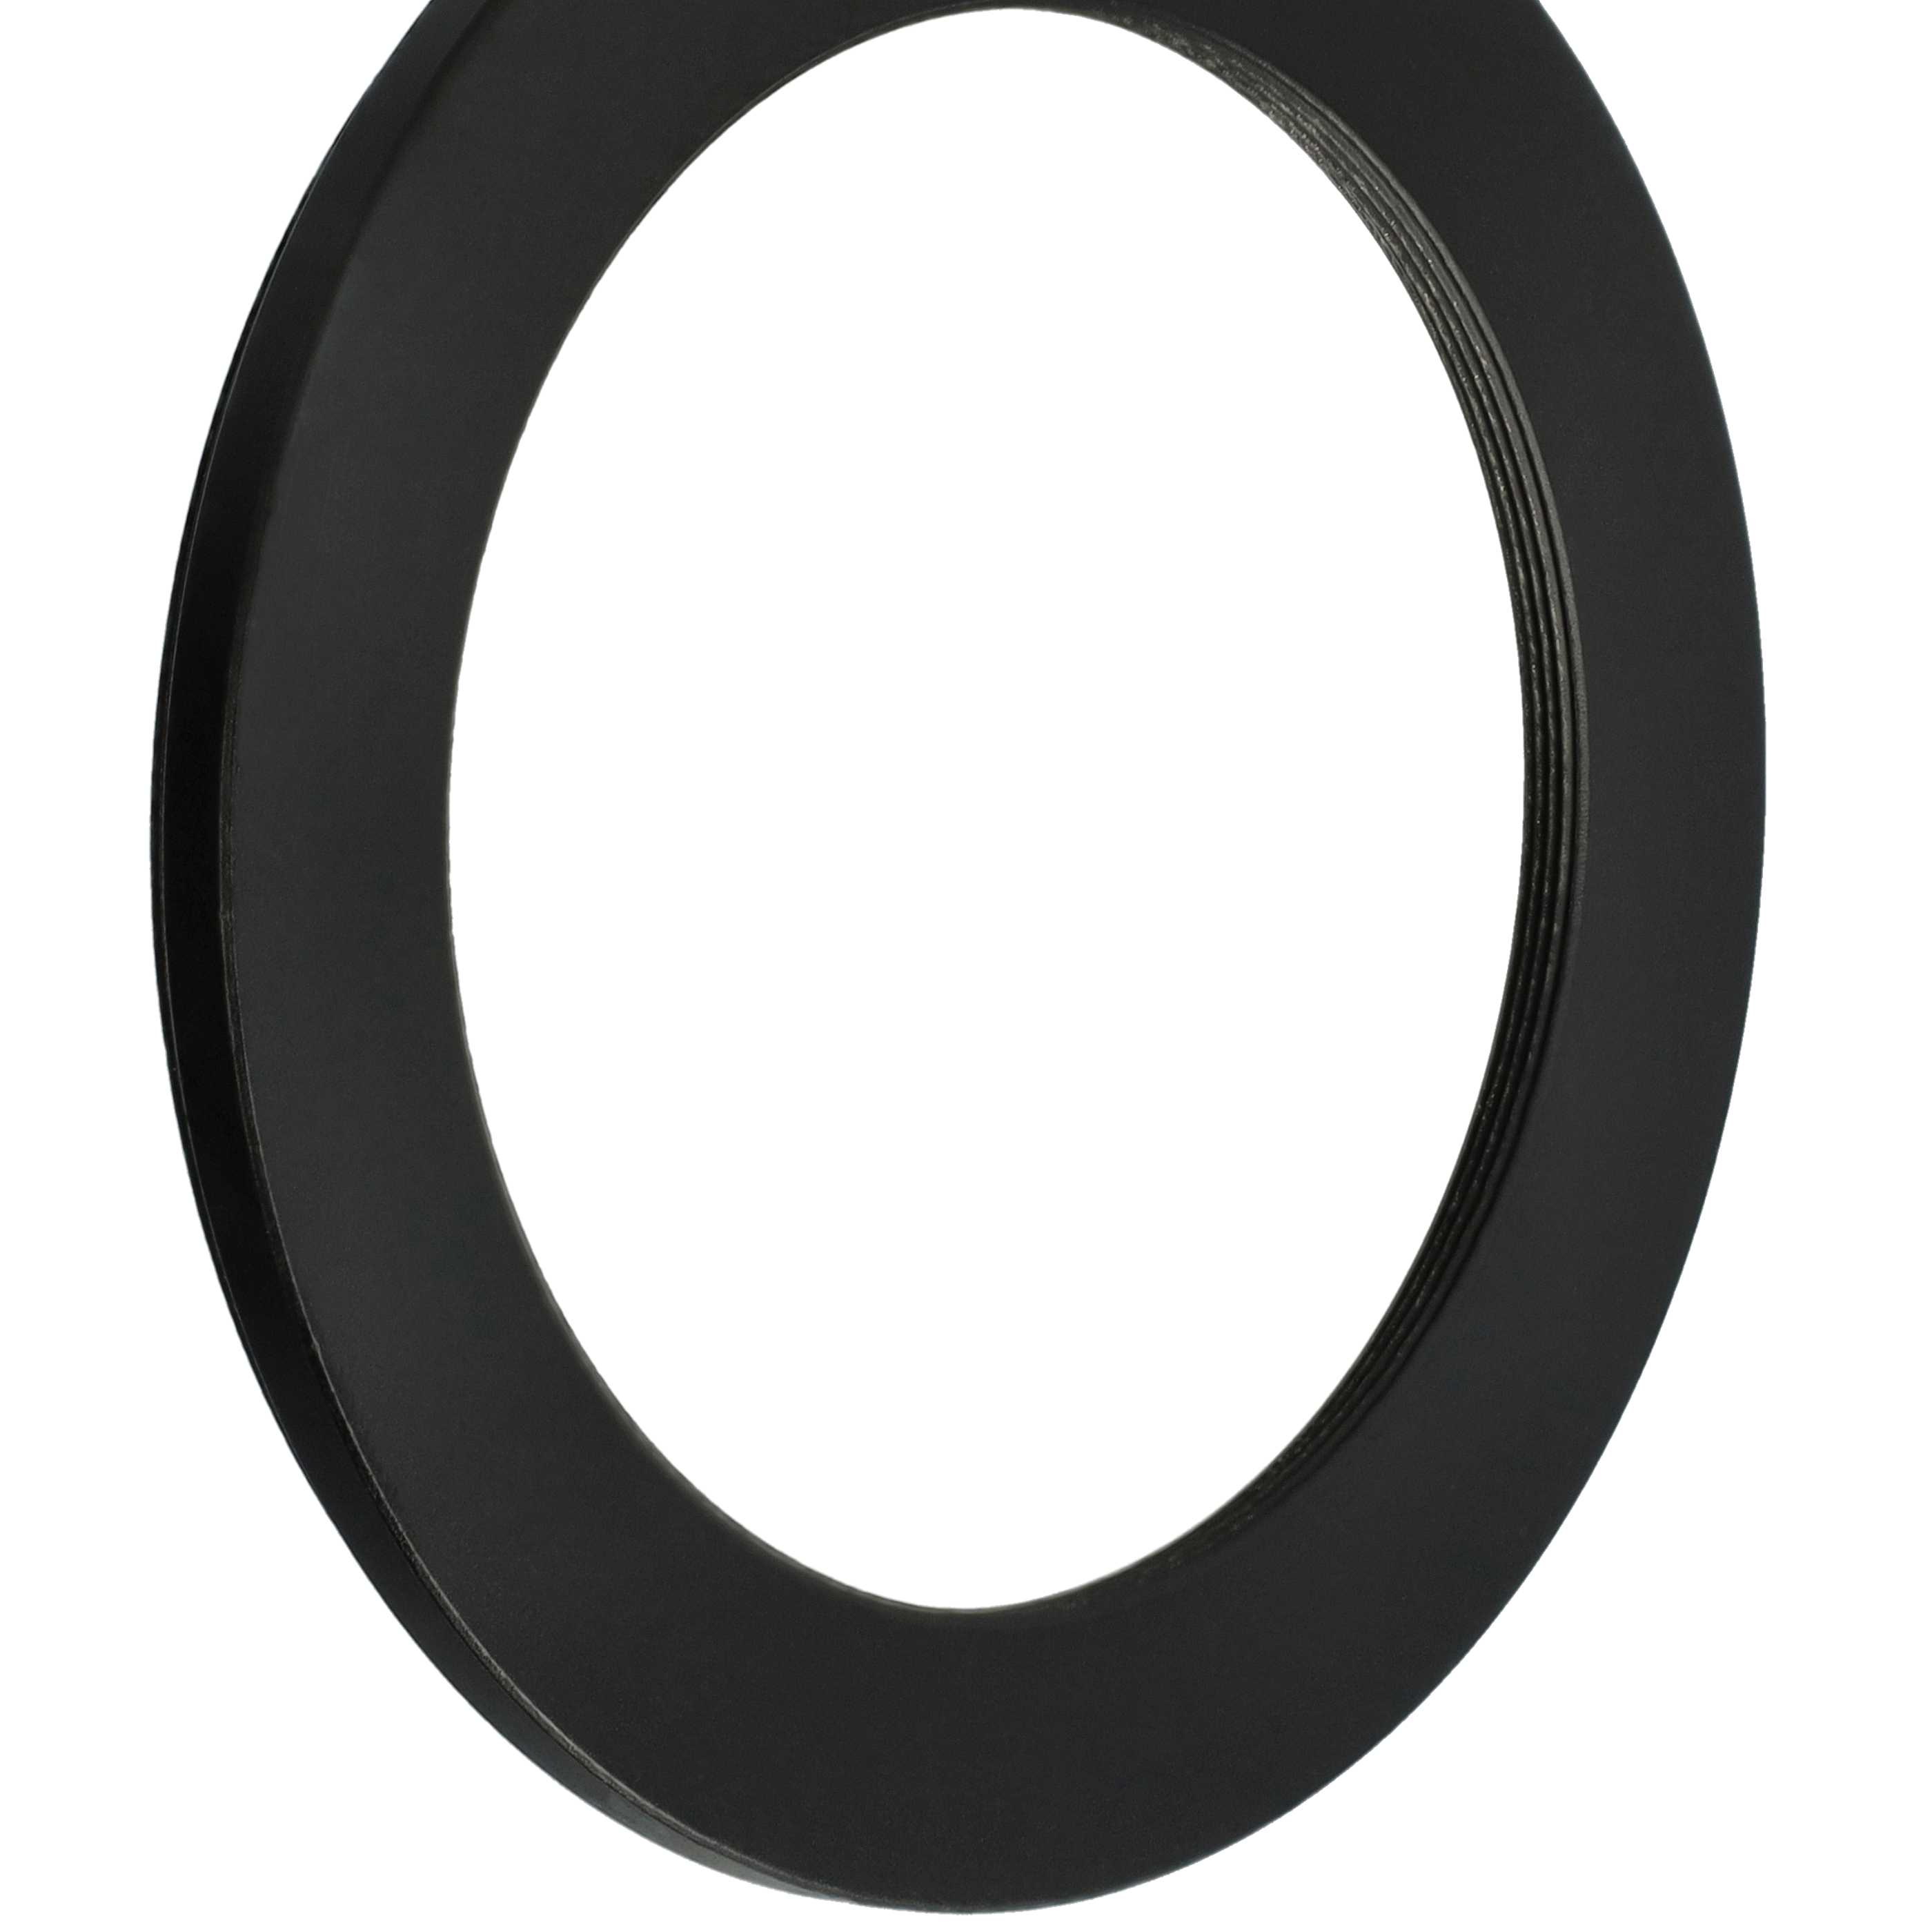 Redukcja filtrowa adapter Step-Down 82 mm - 62 mm pasująca do obiektywu - metal, czarny